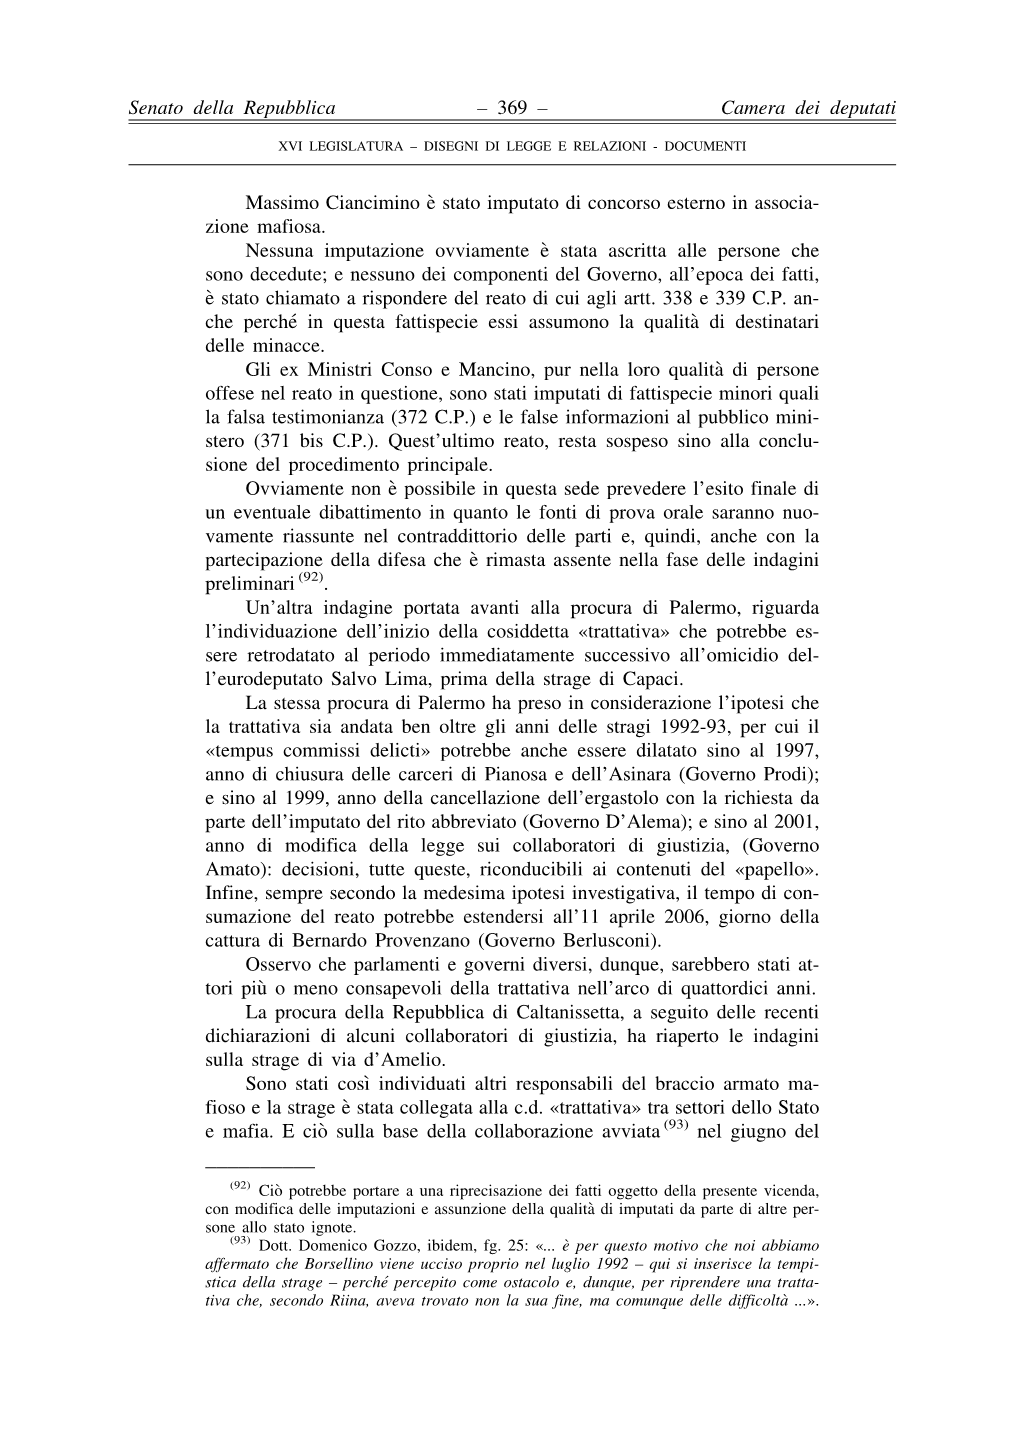 Massimo Ciancimino E` Stato Imputato Di Concorso Esterno in Associa- Zione Mafiosa